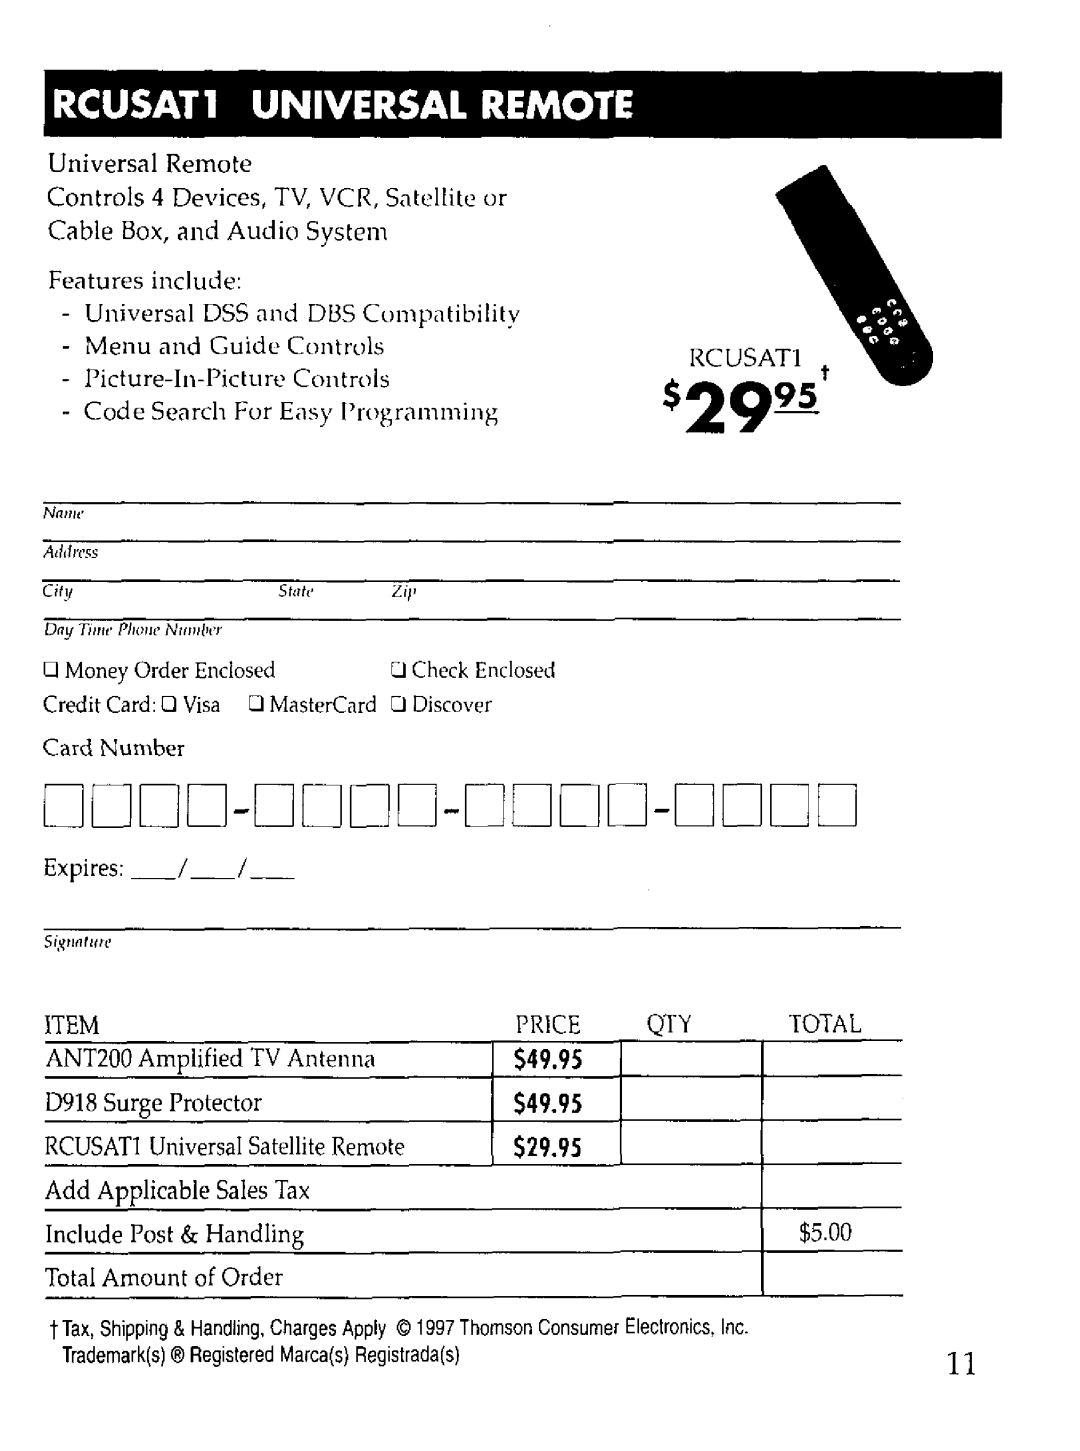 RCA WHP150 manual $2995, RCUSATl UNIVERSAL REMOTE, Dddd-Dddd-Dddd-Dddd, $49.95, $29.95 